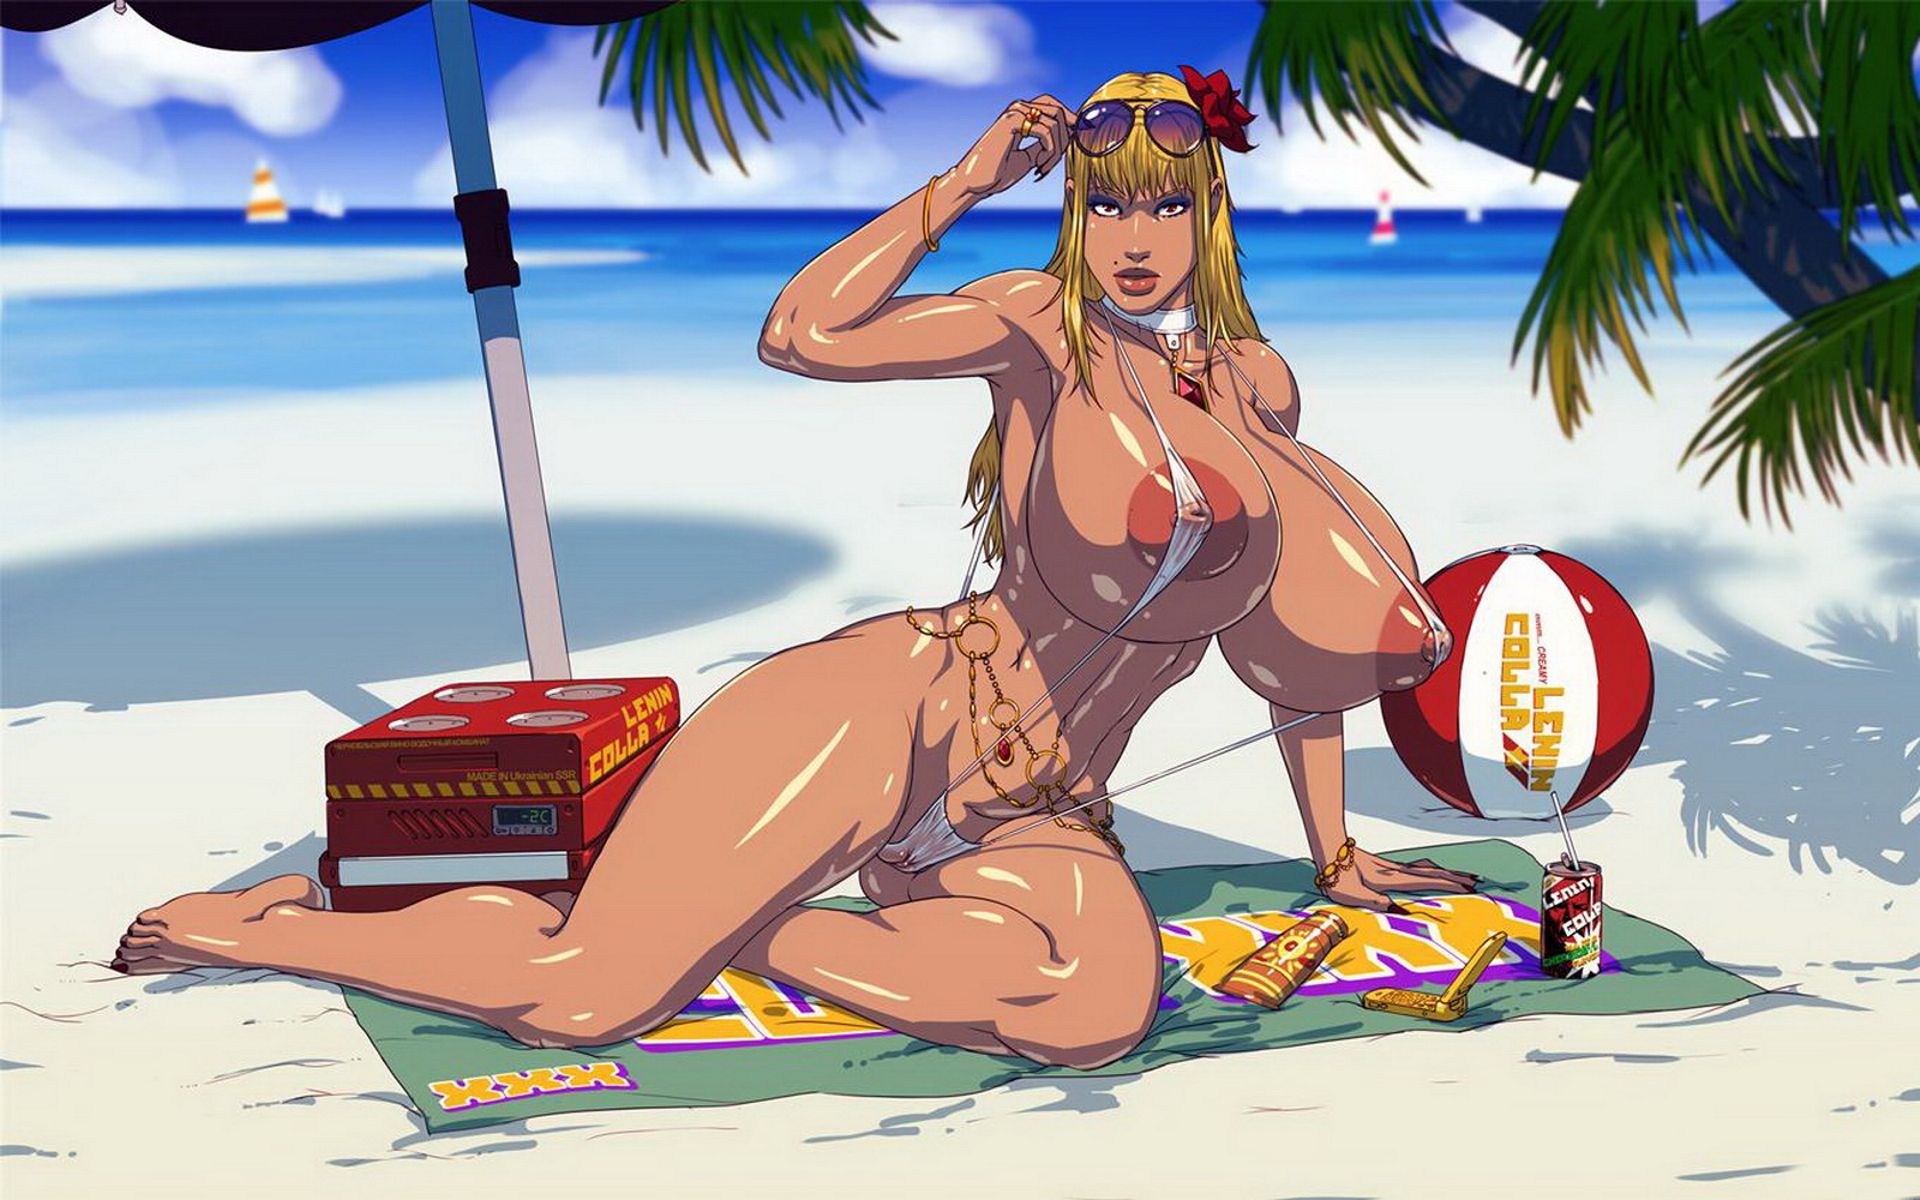 обои с рисованной эротикой, блондинка с огромными сиськами в растянутом купальнике на пляже под пальмой. фоновый рисунок для телефона